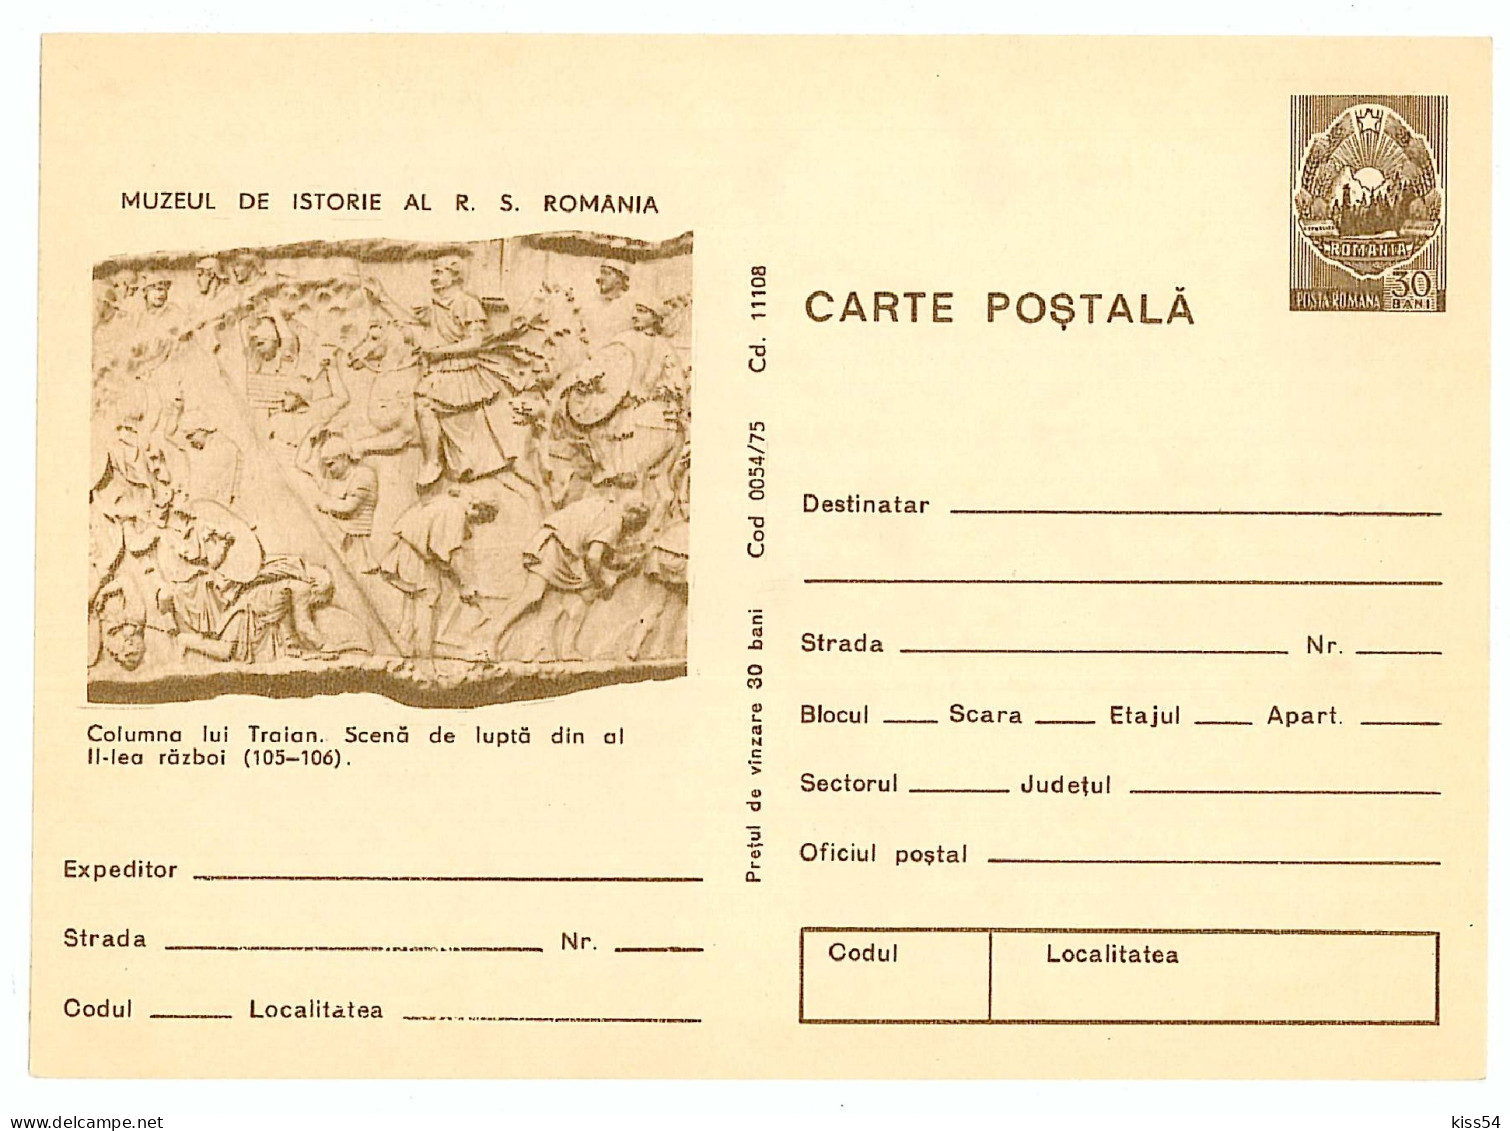 IP 75 - 54 ROME, Trajan's Column, Romania - Stationery - Unused - 1975 - Postal Stationery